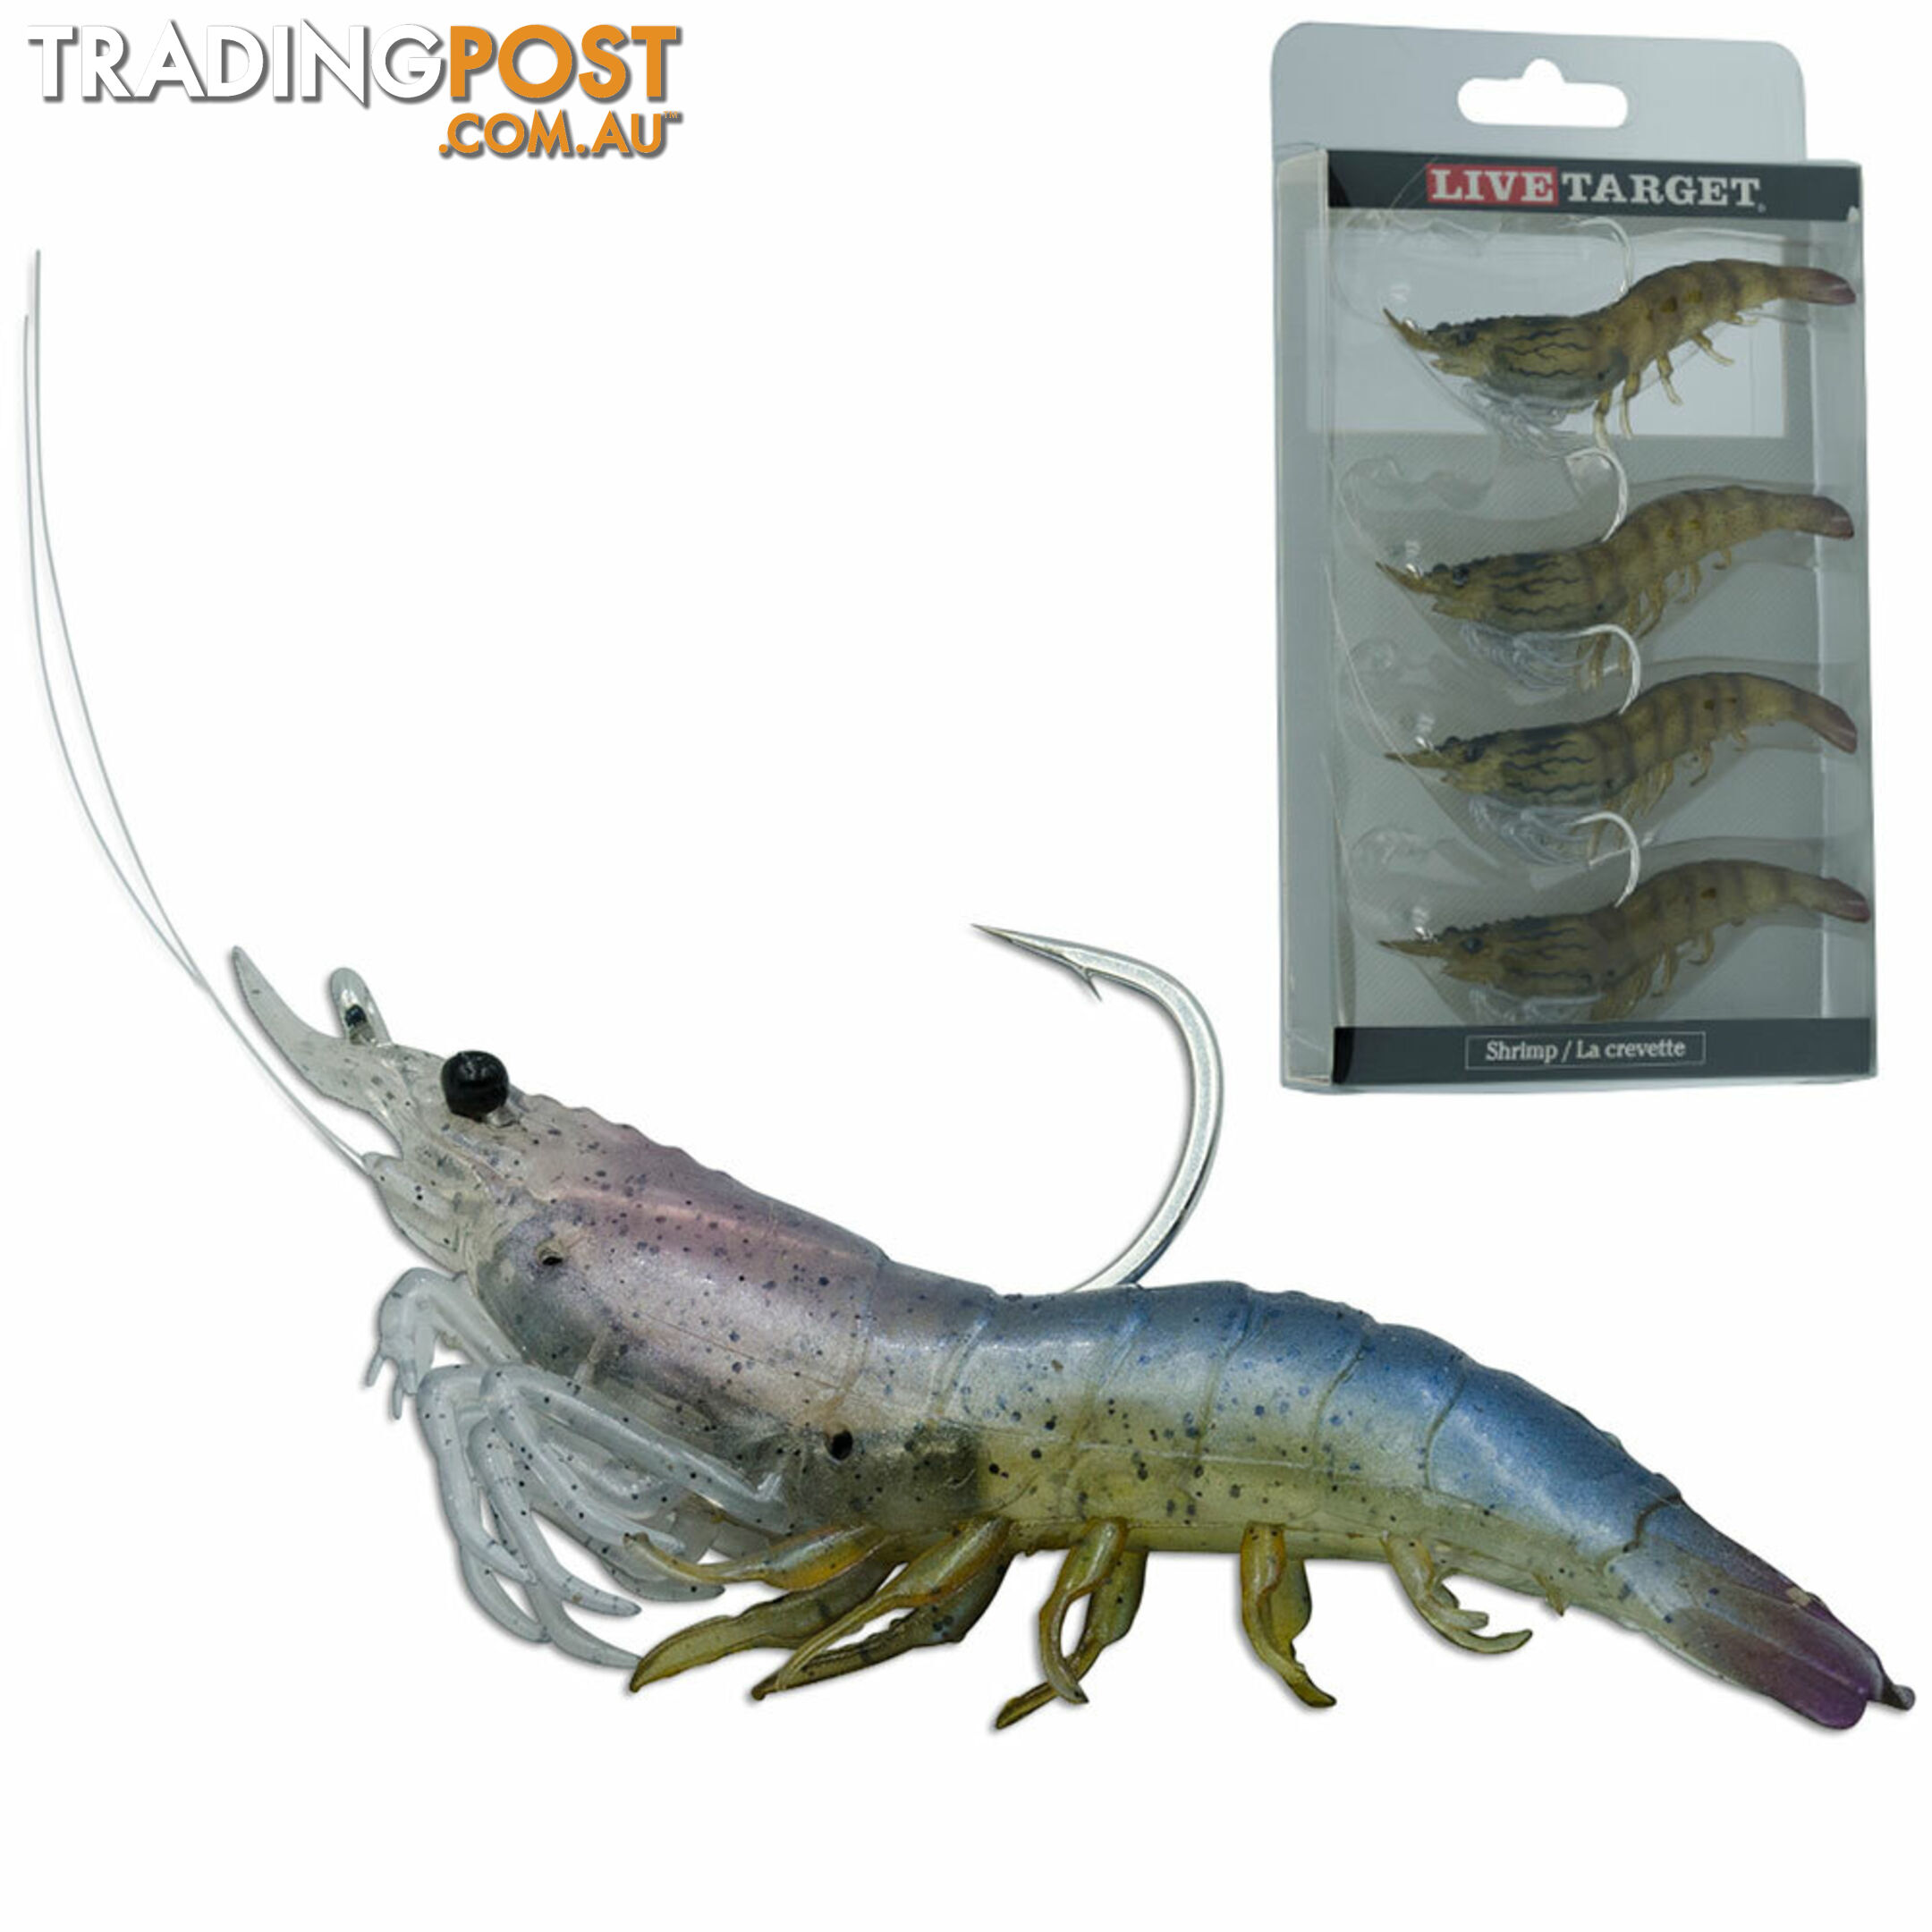 Live Target Shrimps - Soft Plastic Prawns - 42138 - Live Target